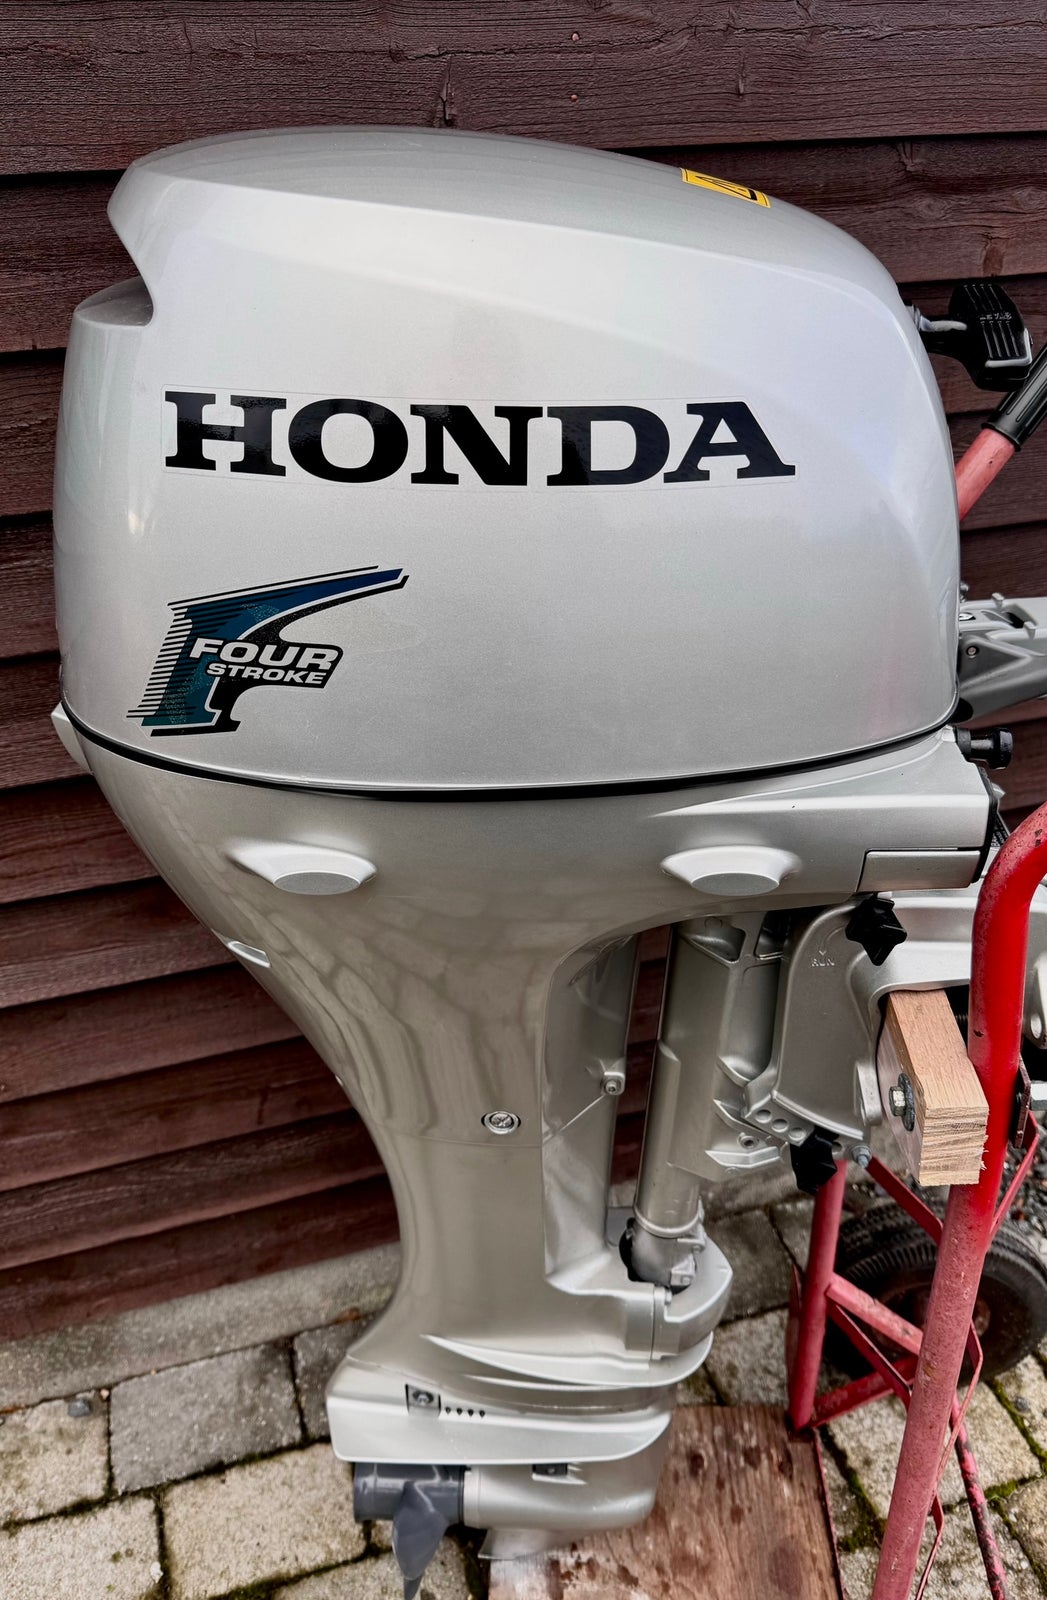 Honda påhængsmotor, 10 hk, benzin